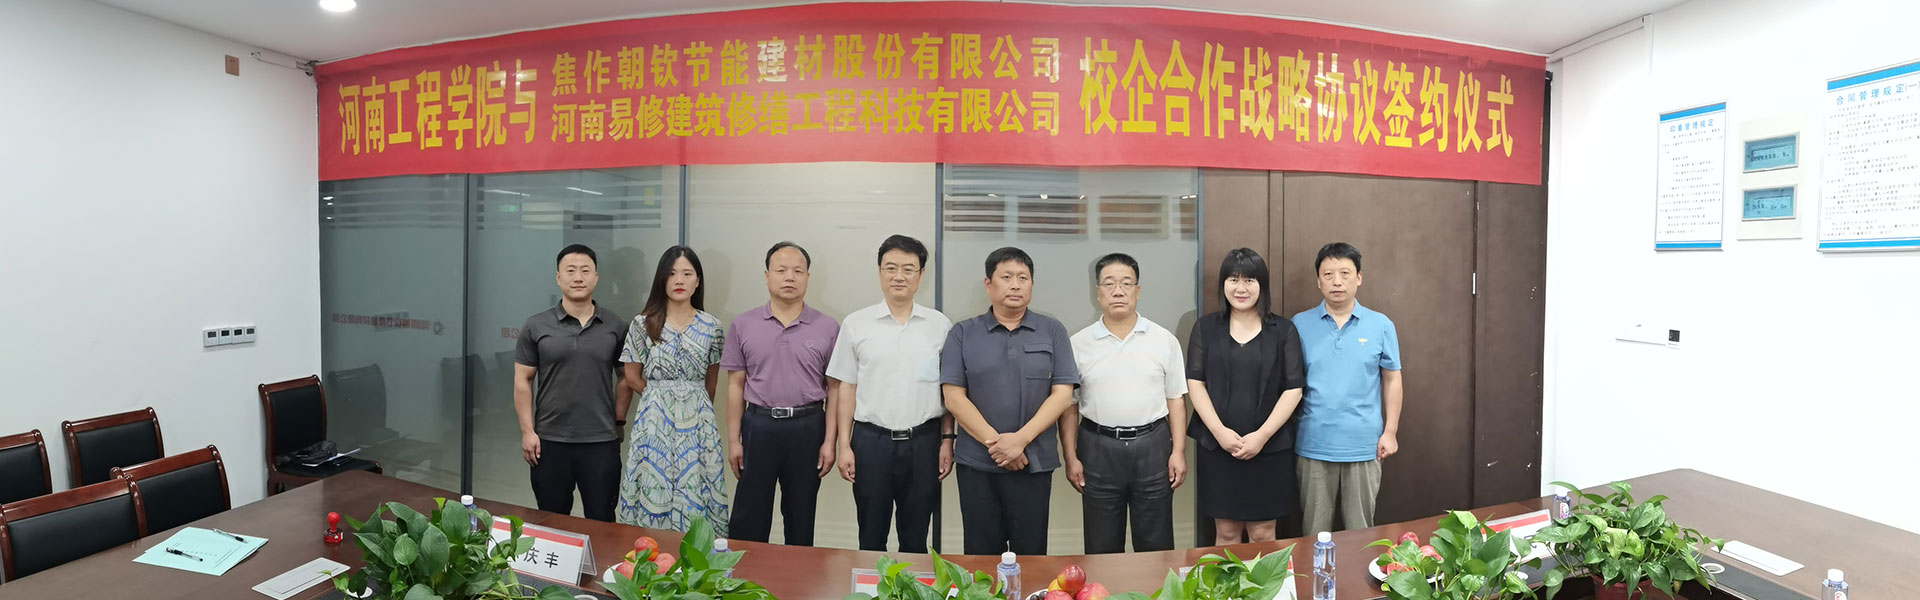 易修科技与河南朝钦节能公司、河南工程学院签订合作战略协议